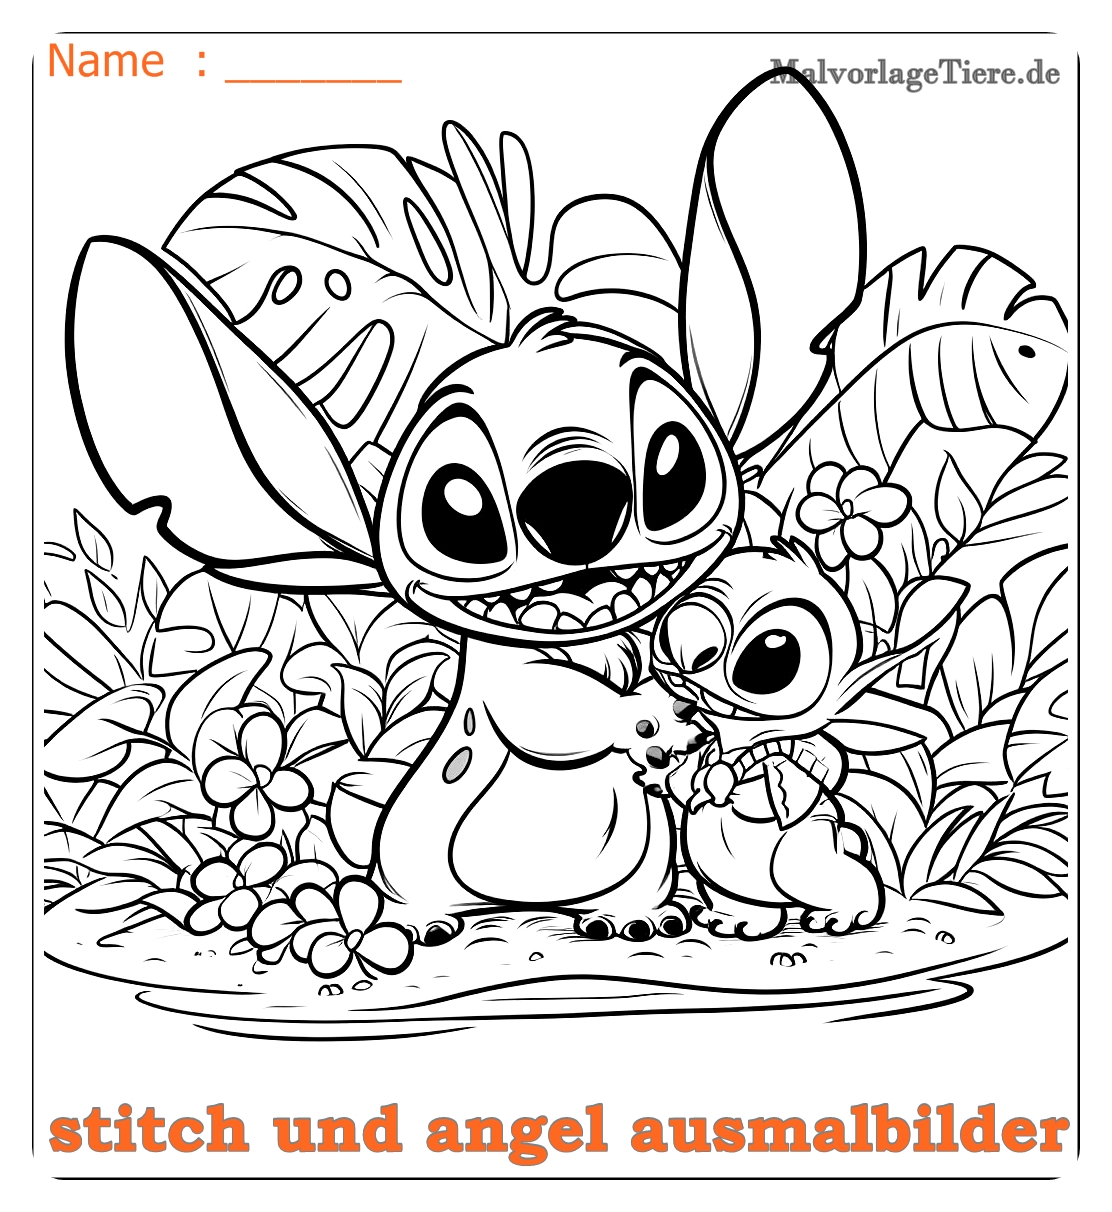 stitch und angel ausmalbilder08 by malvorlagetiere.de